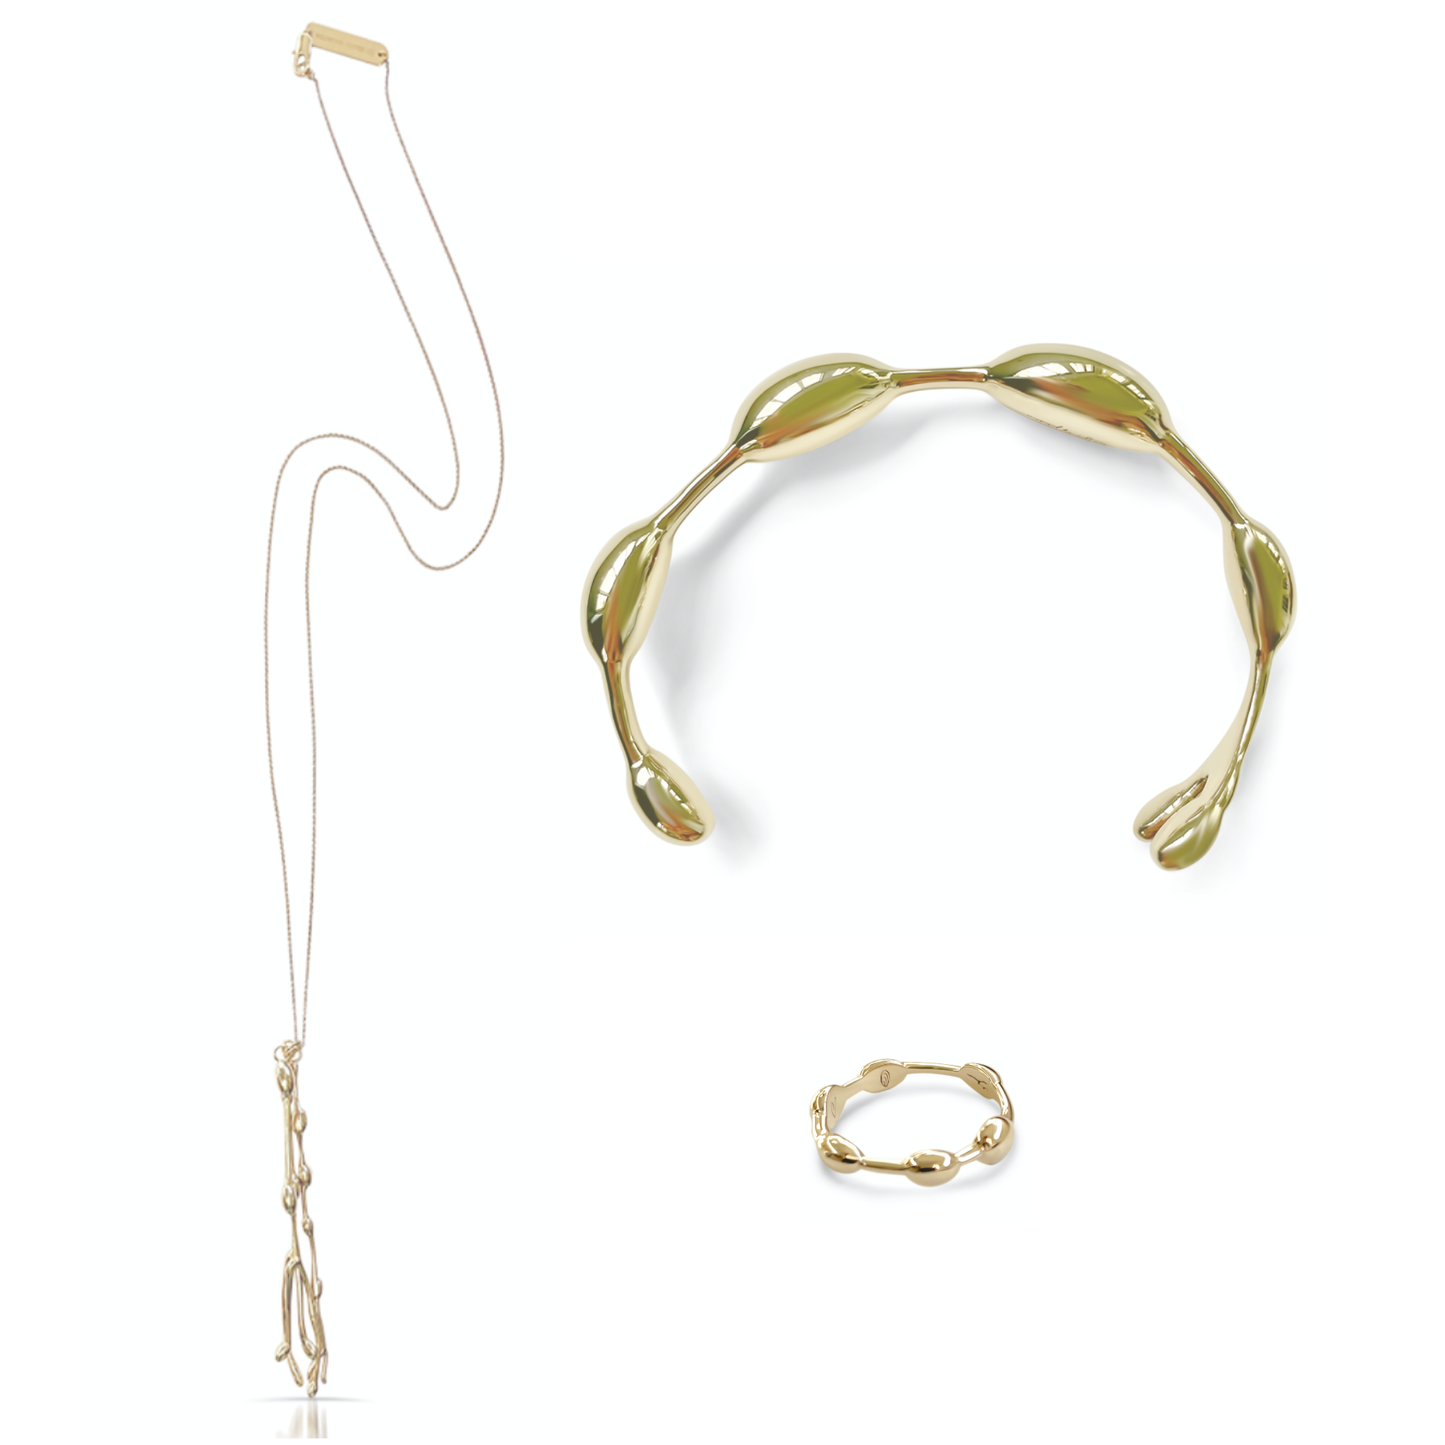 Seaweed necklace, seaweed bracelet, seaweed ring in gold